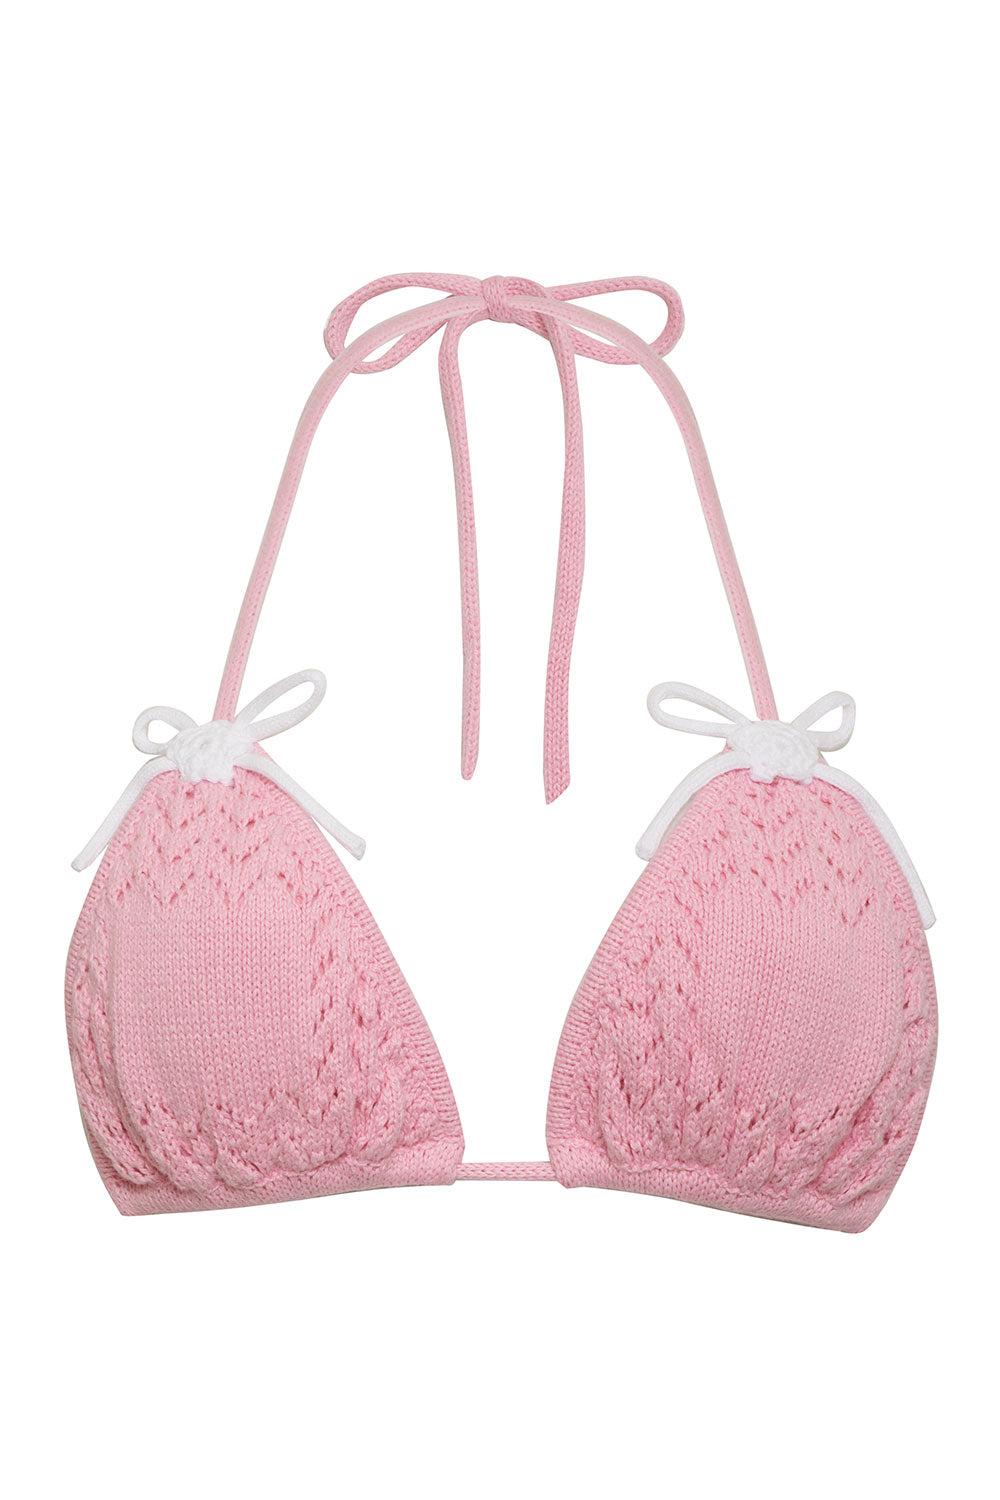 x GUIZIO Tide Crochet Triangle Bikini Top - Slipper Pink